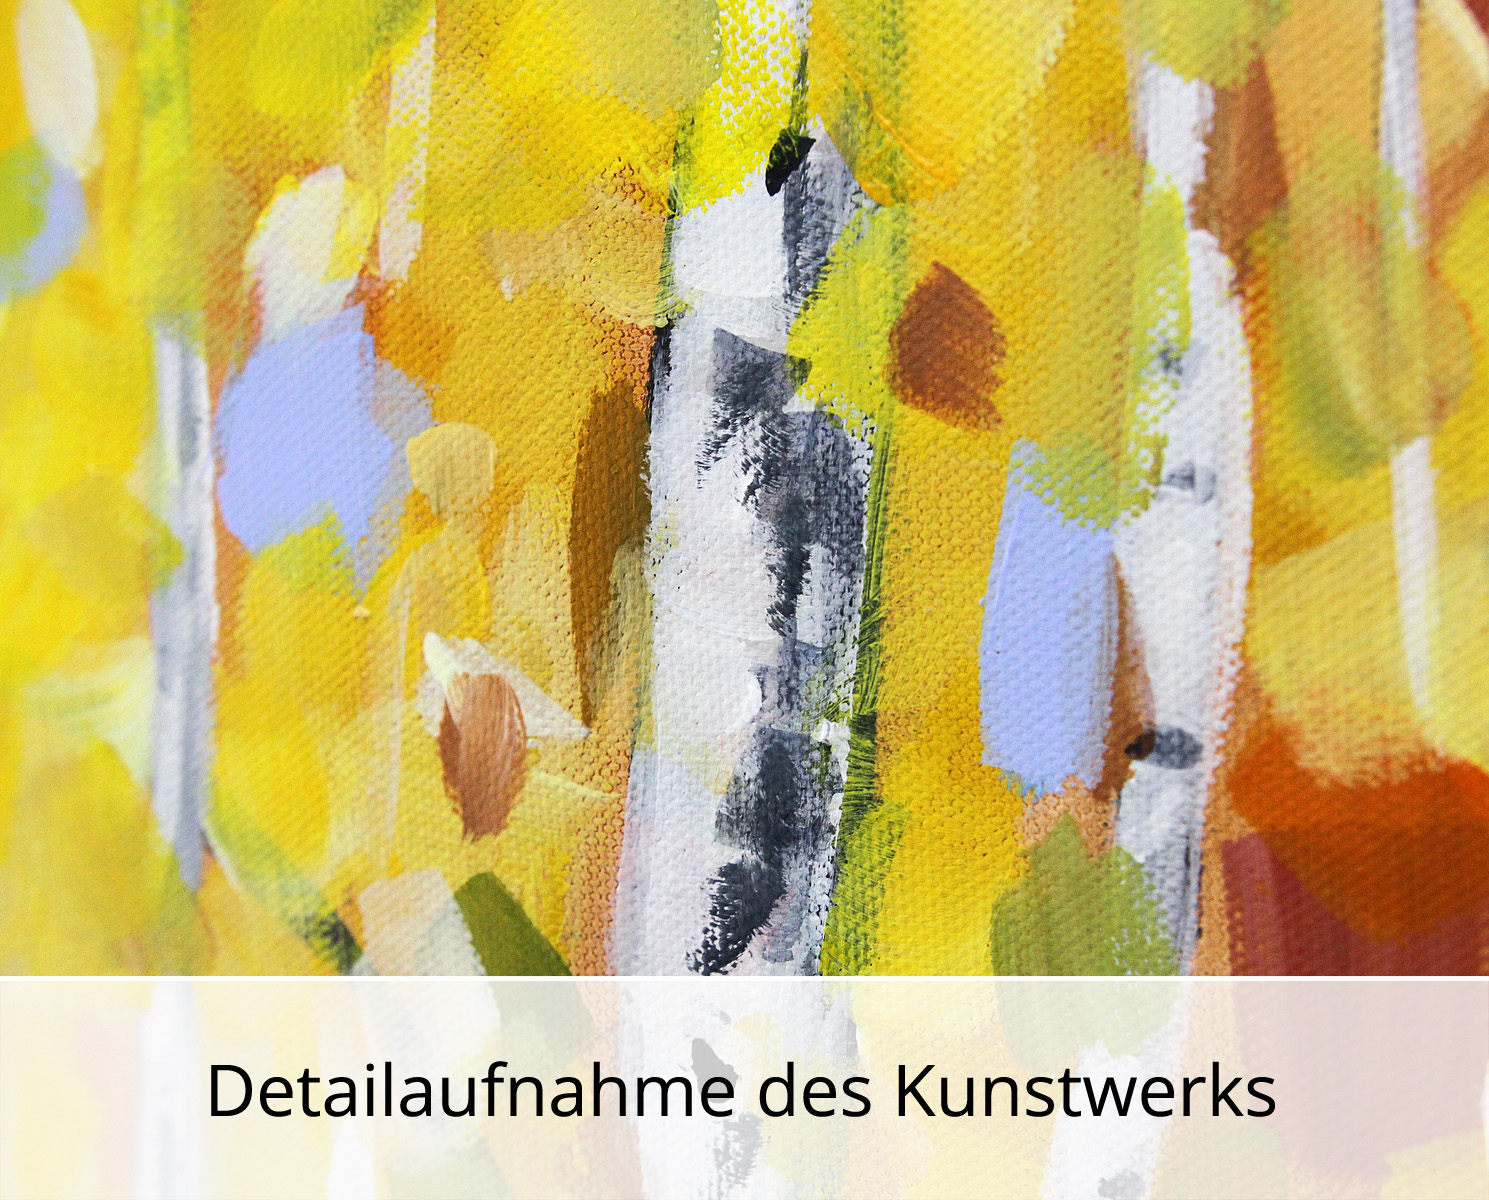 M.Kühne: "Herbstwald", modernes Originalgemälde (Unikat)